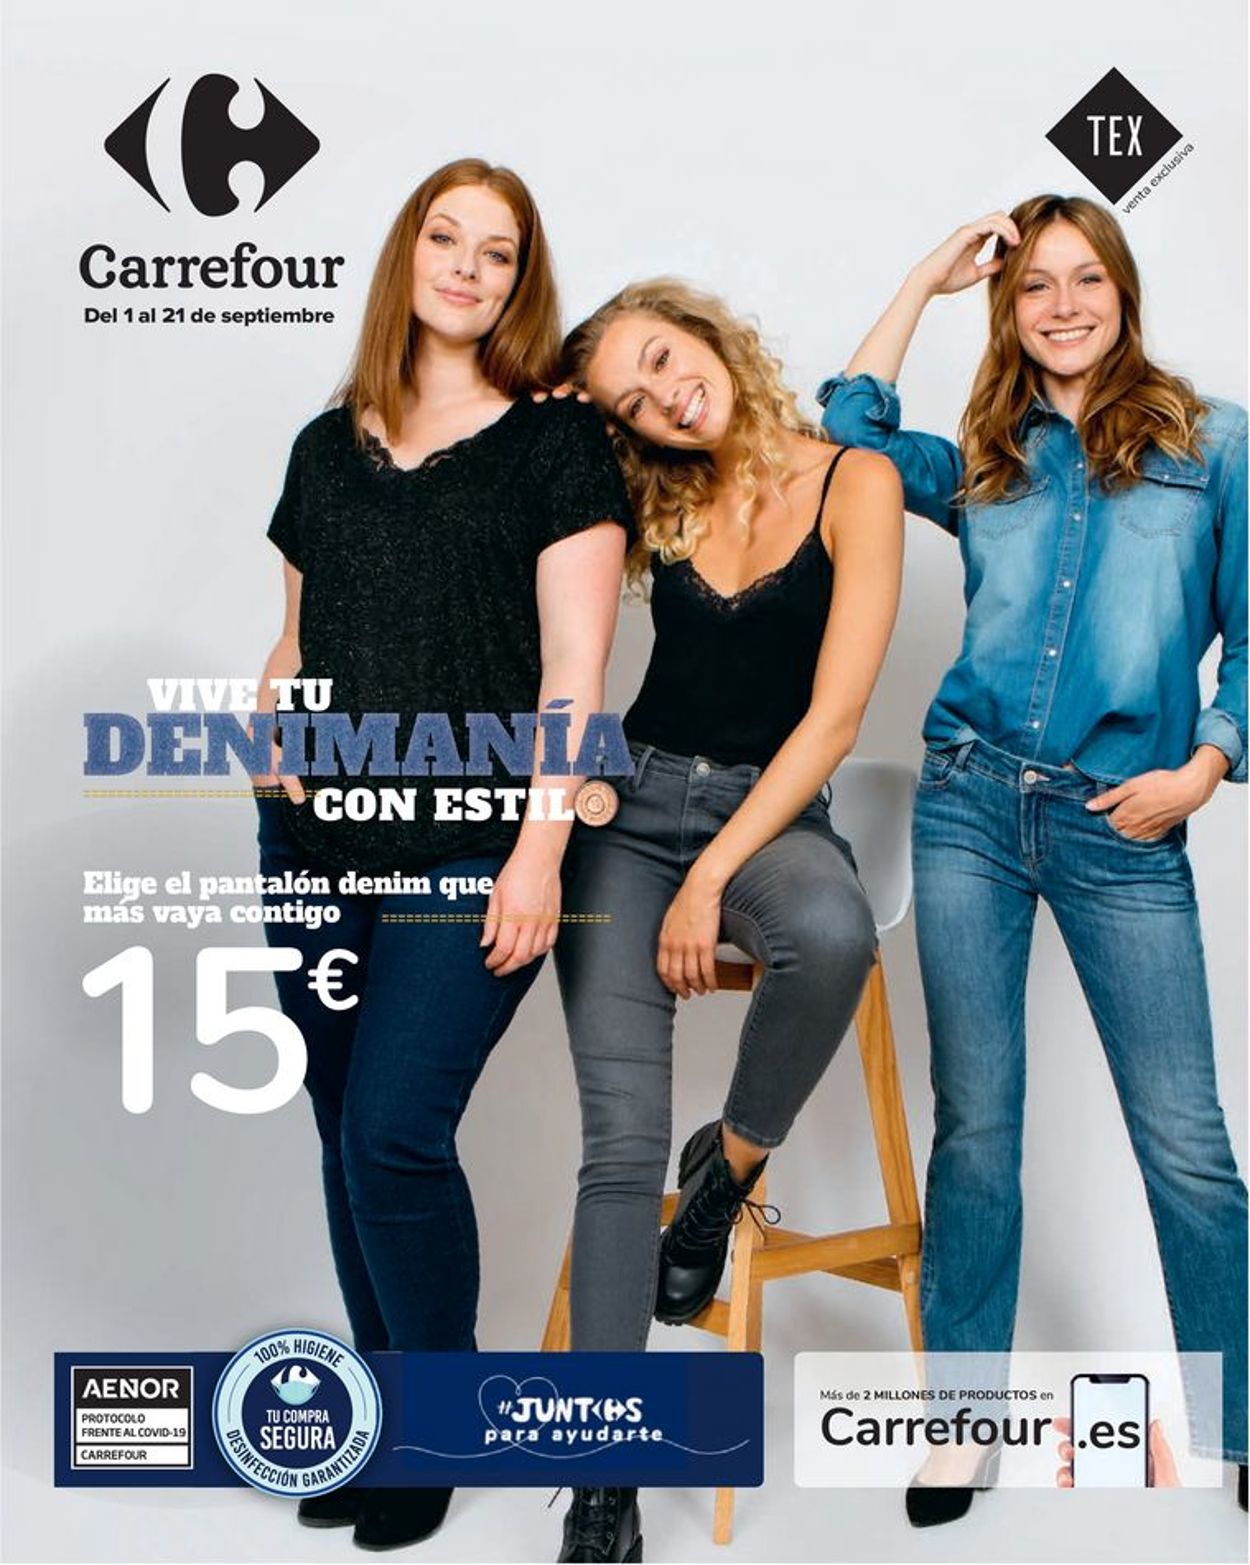 Catálogo Carrefour - Actual 21.09.2020 | Yulak